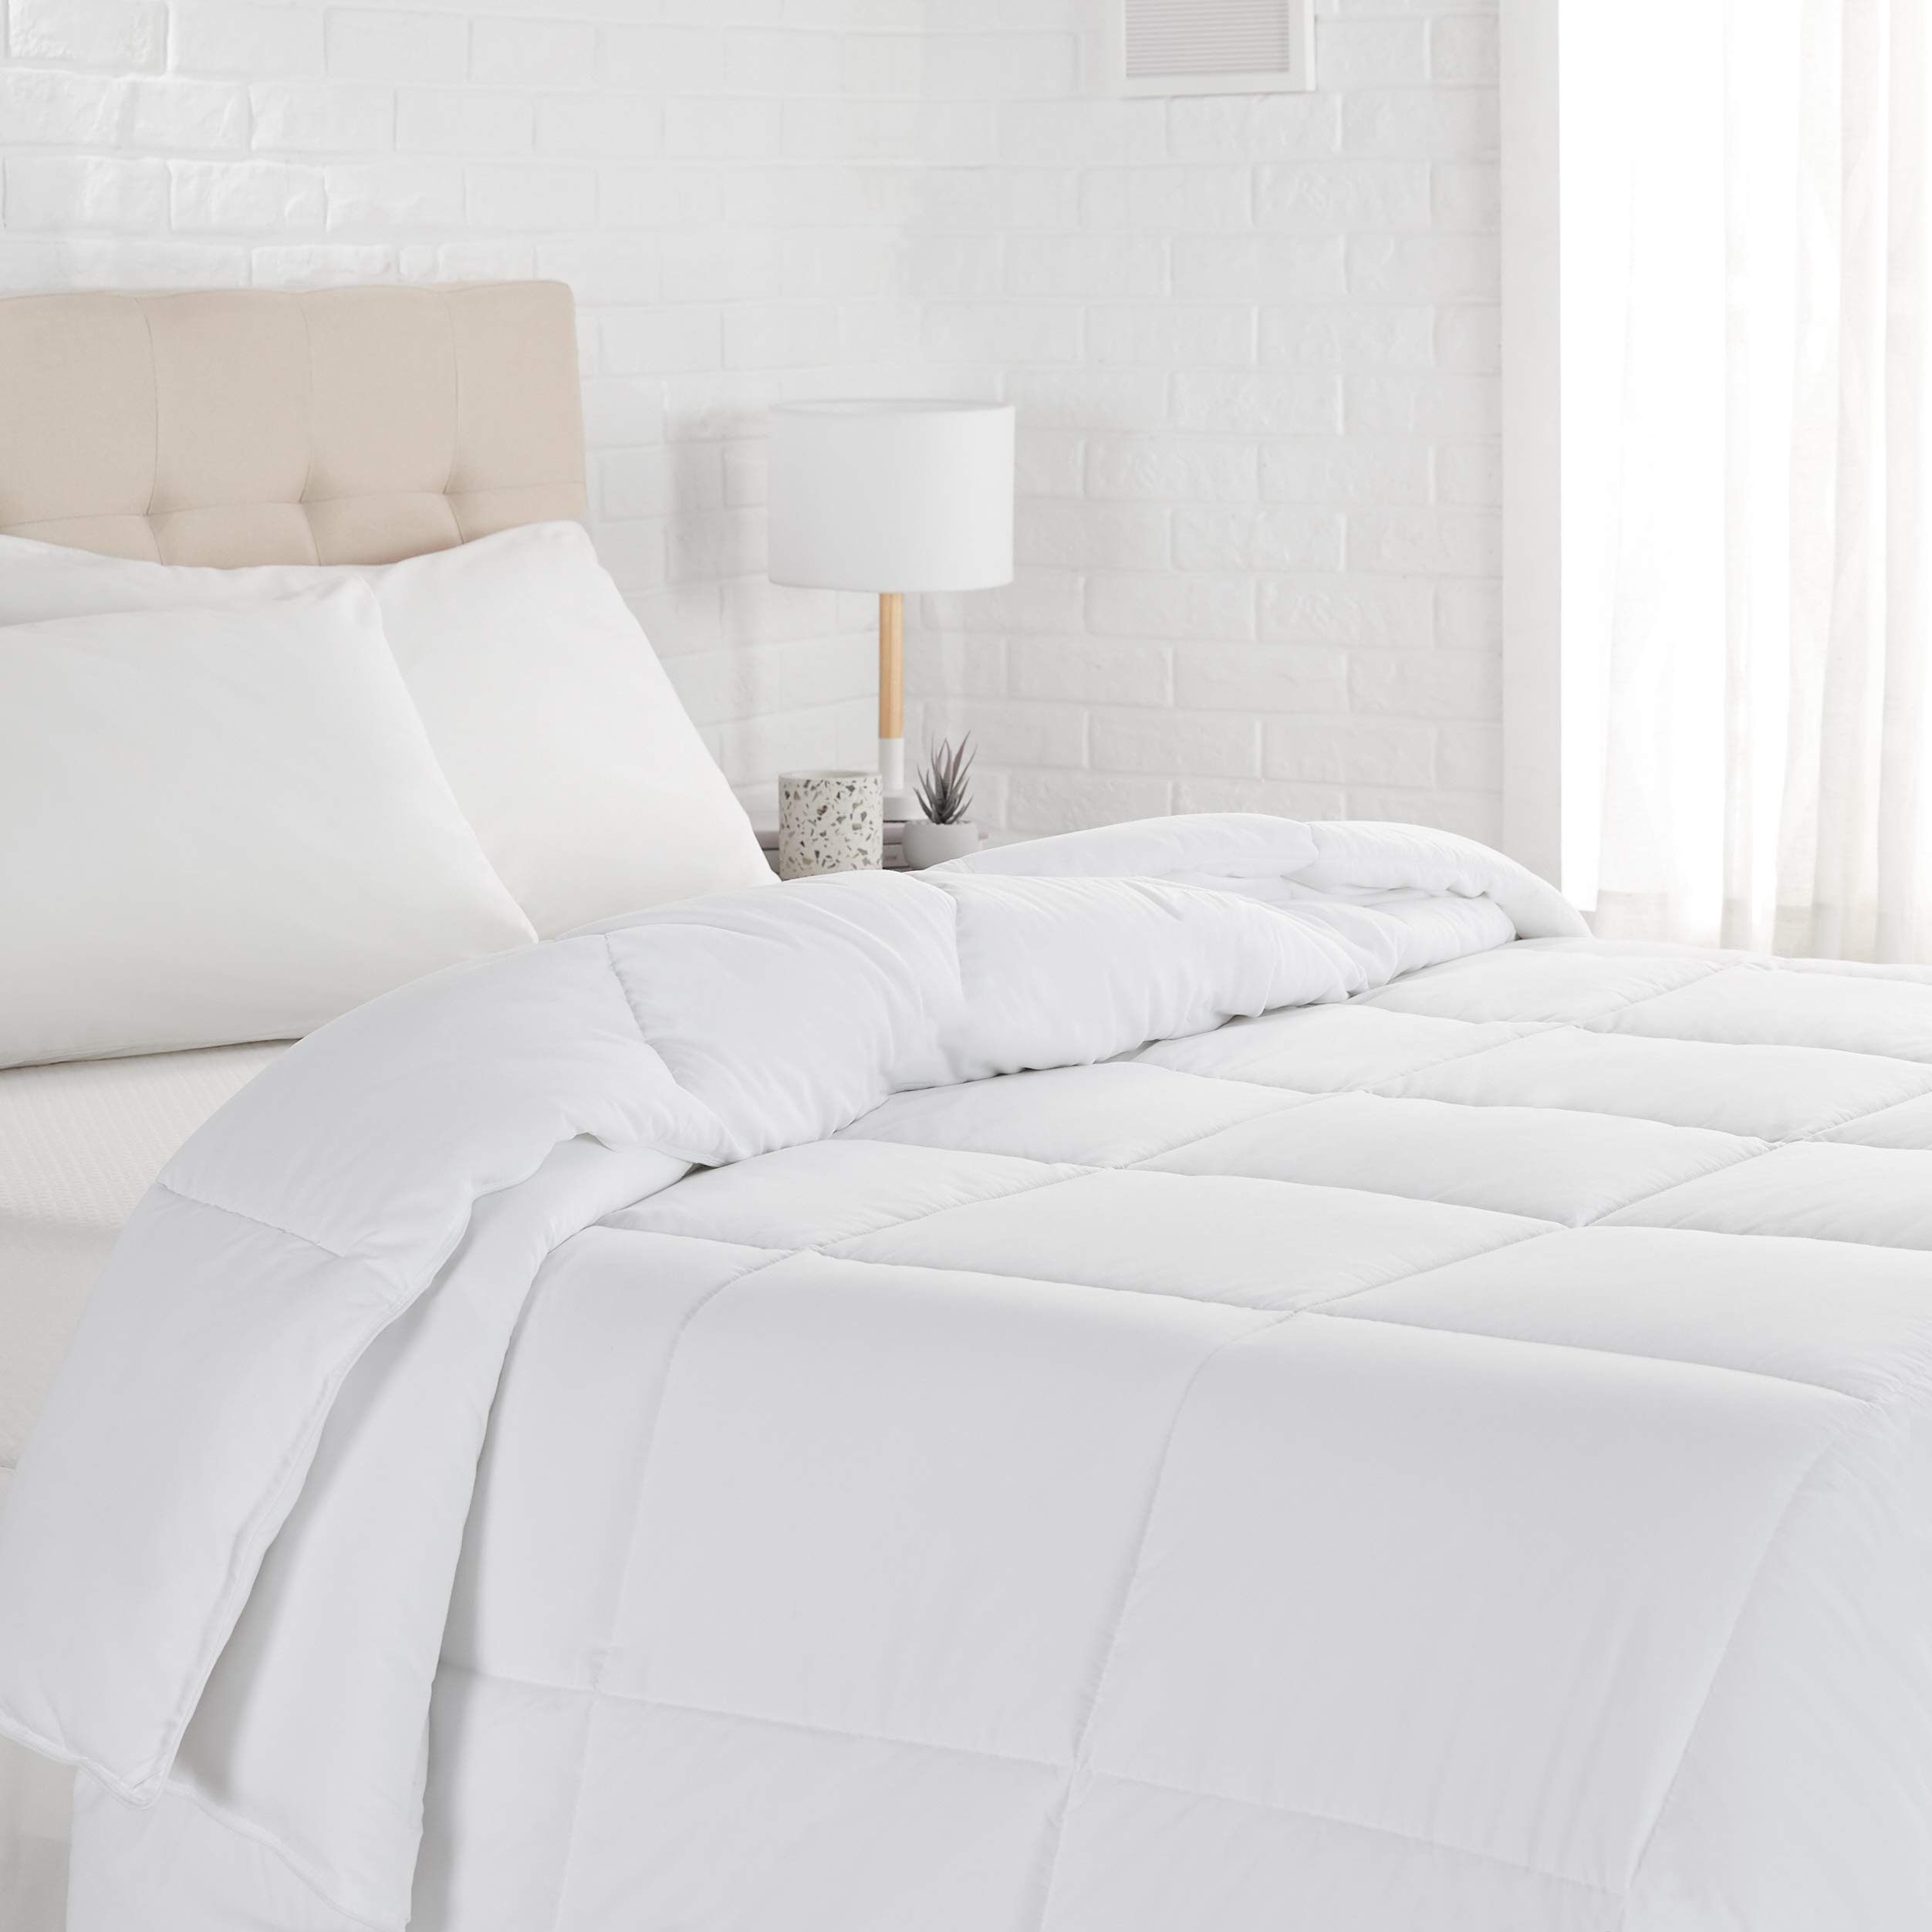 Book Cover Amazon Basics Down Alternative Bedding Comforter Duvet Insert, Full / Queen, White, Light